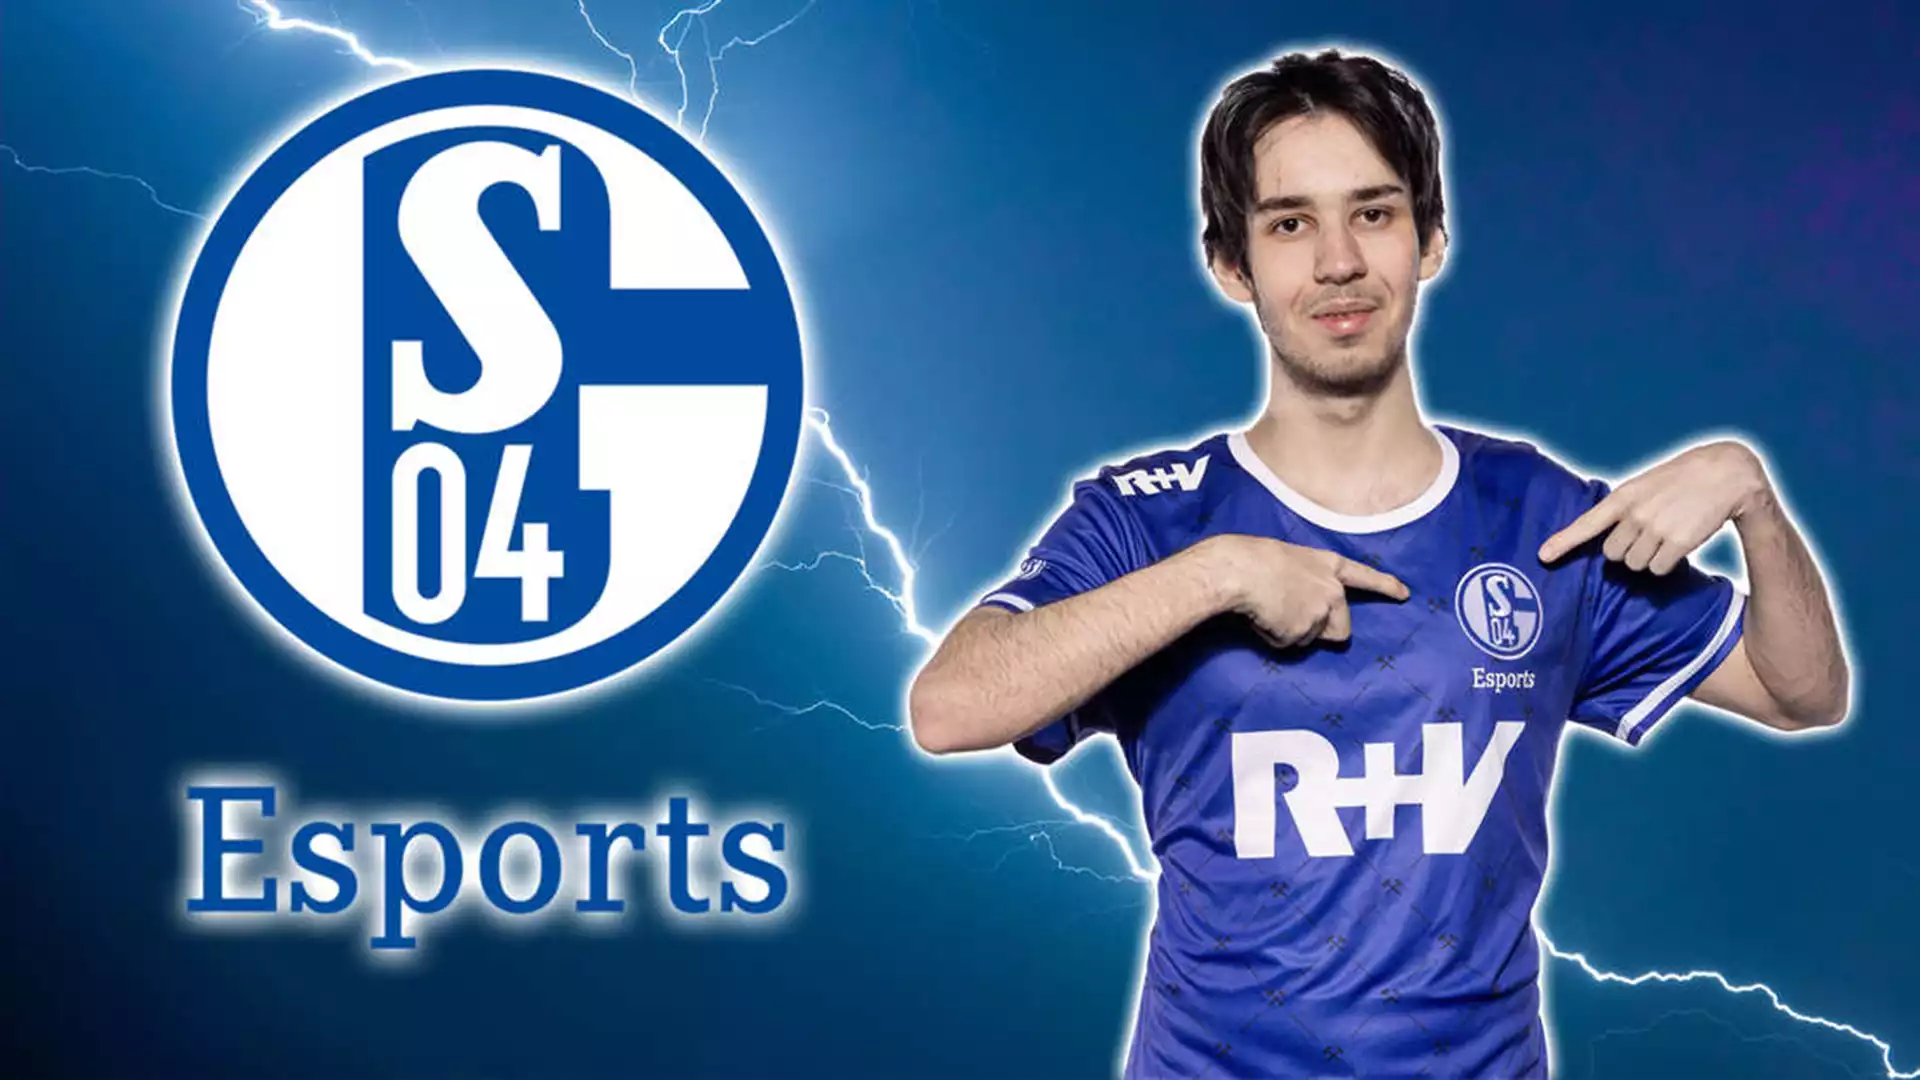 #Schalke04 #Esports kicks out flamer Isma